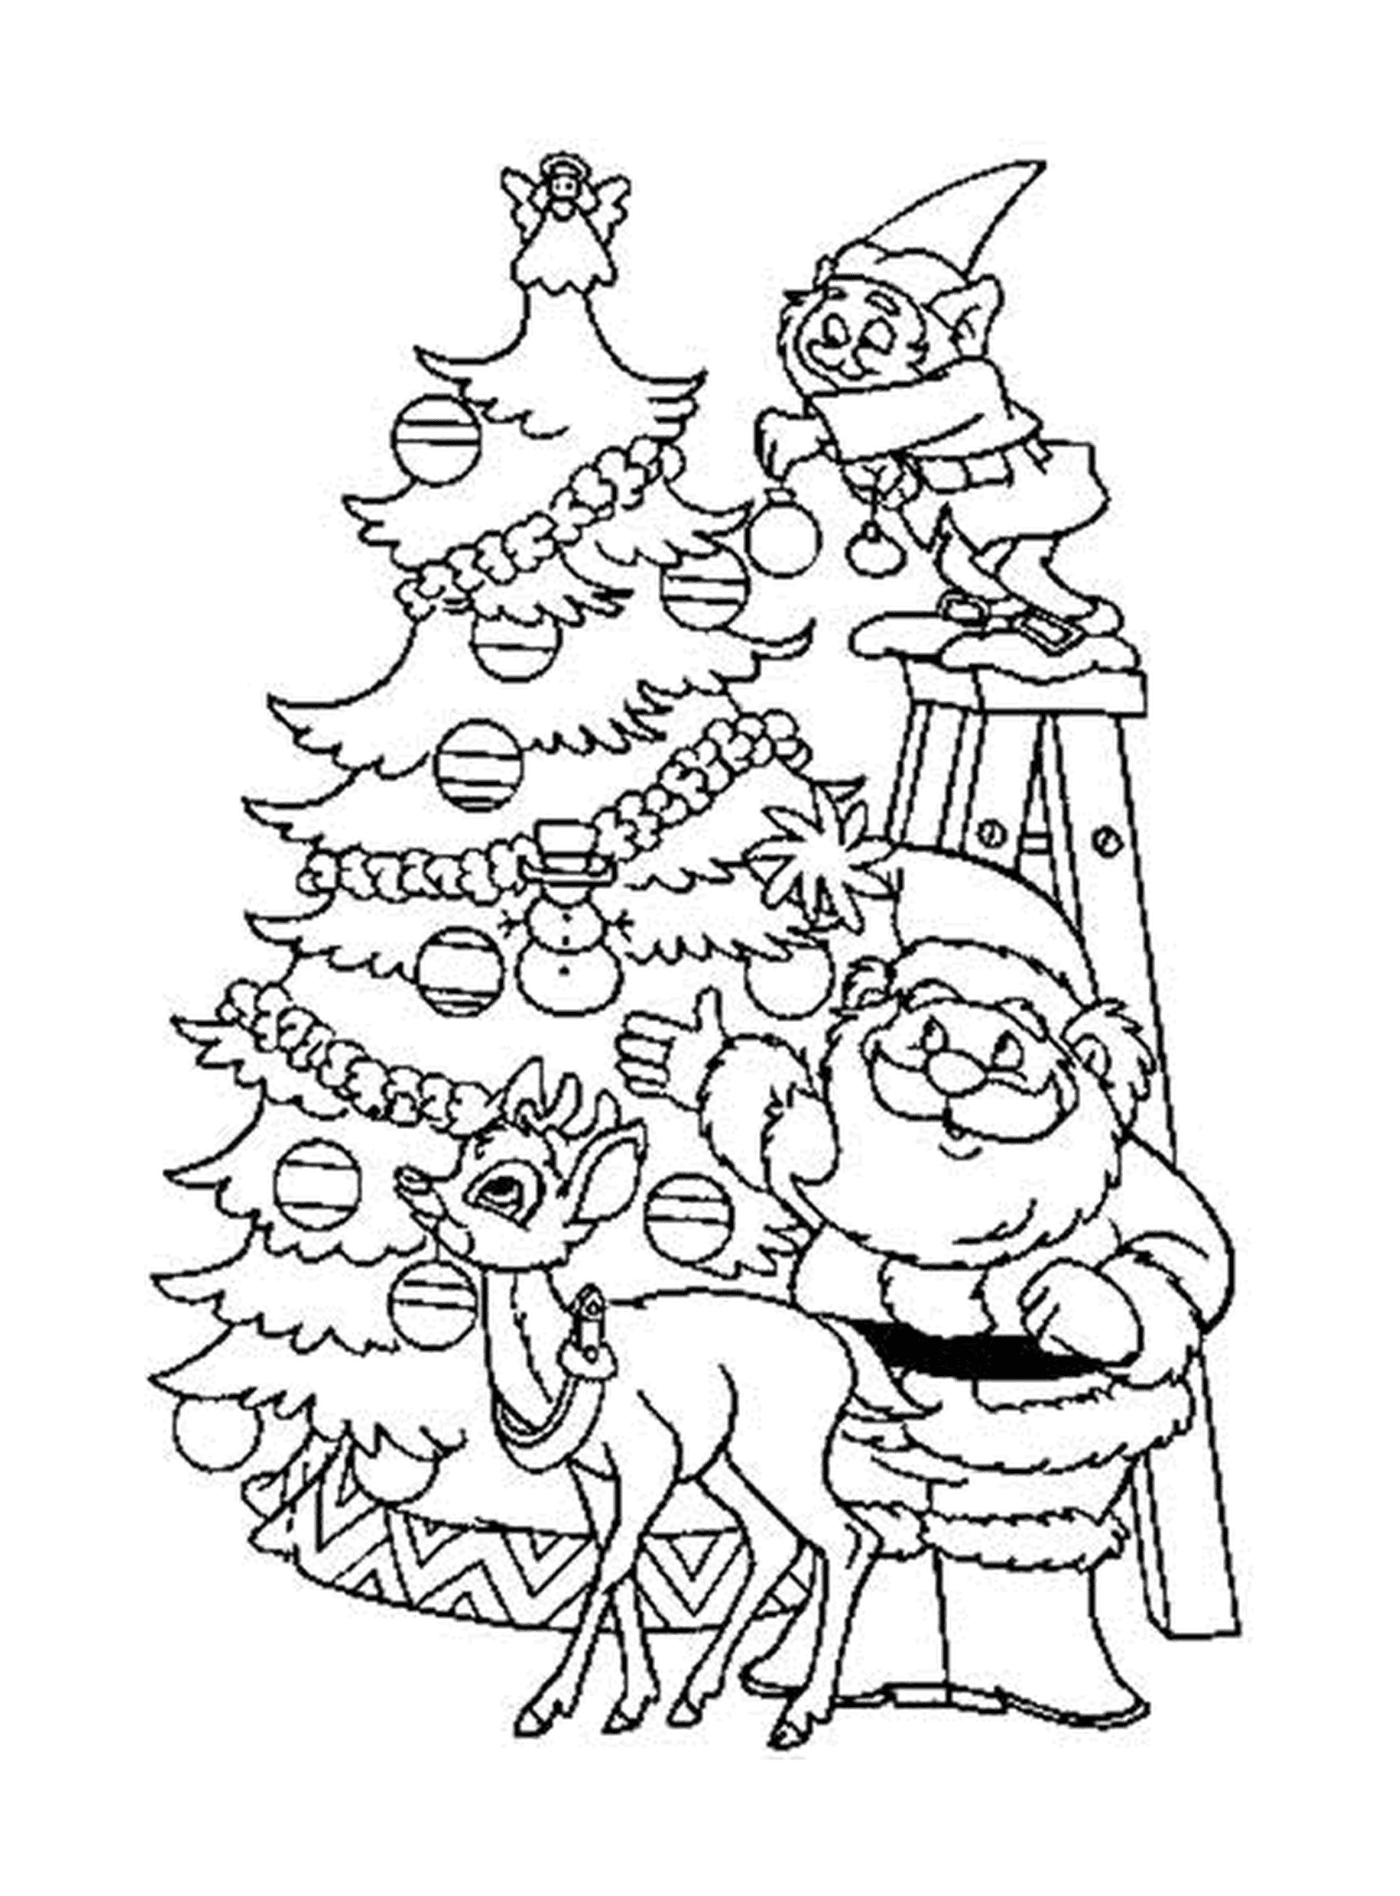  Santa Claus, renos y alces decorando un bonito árbol 